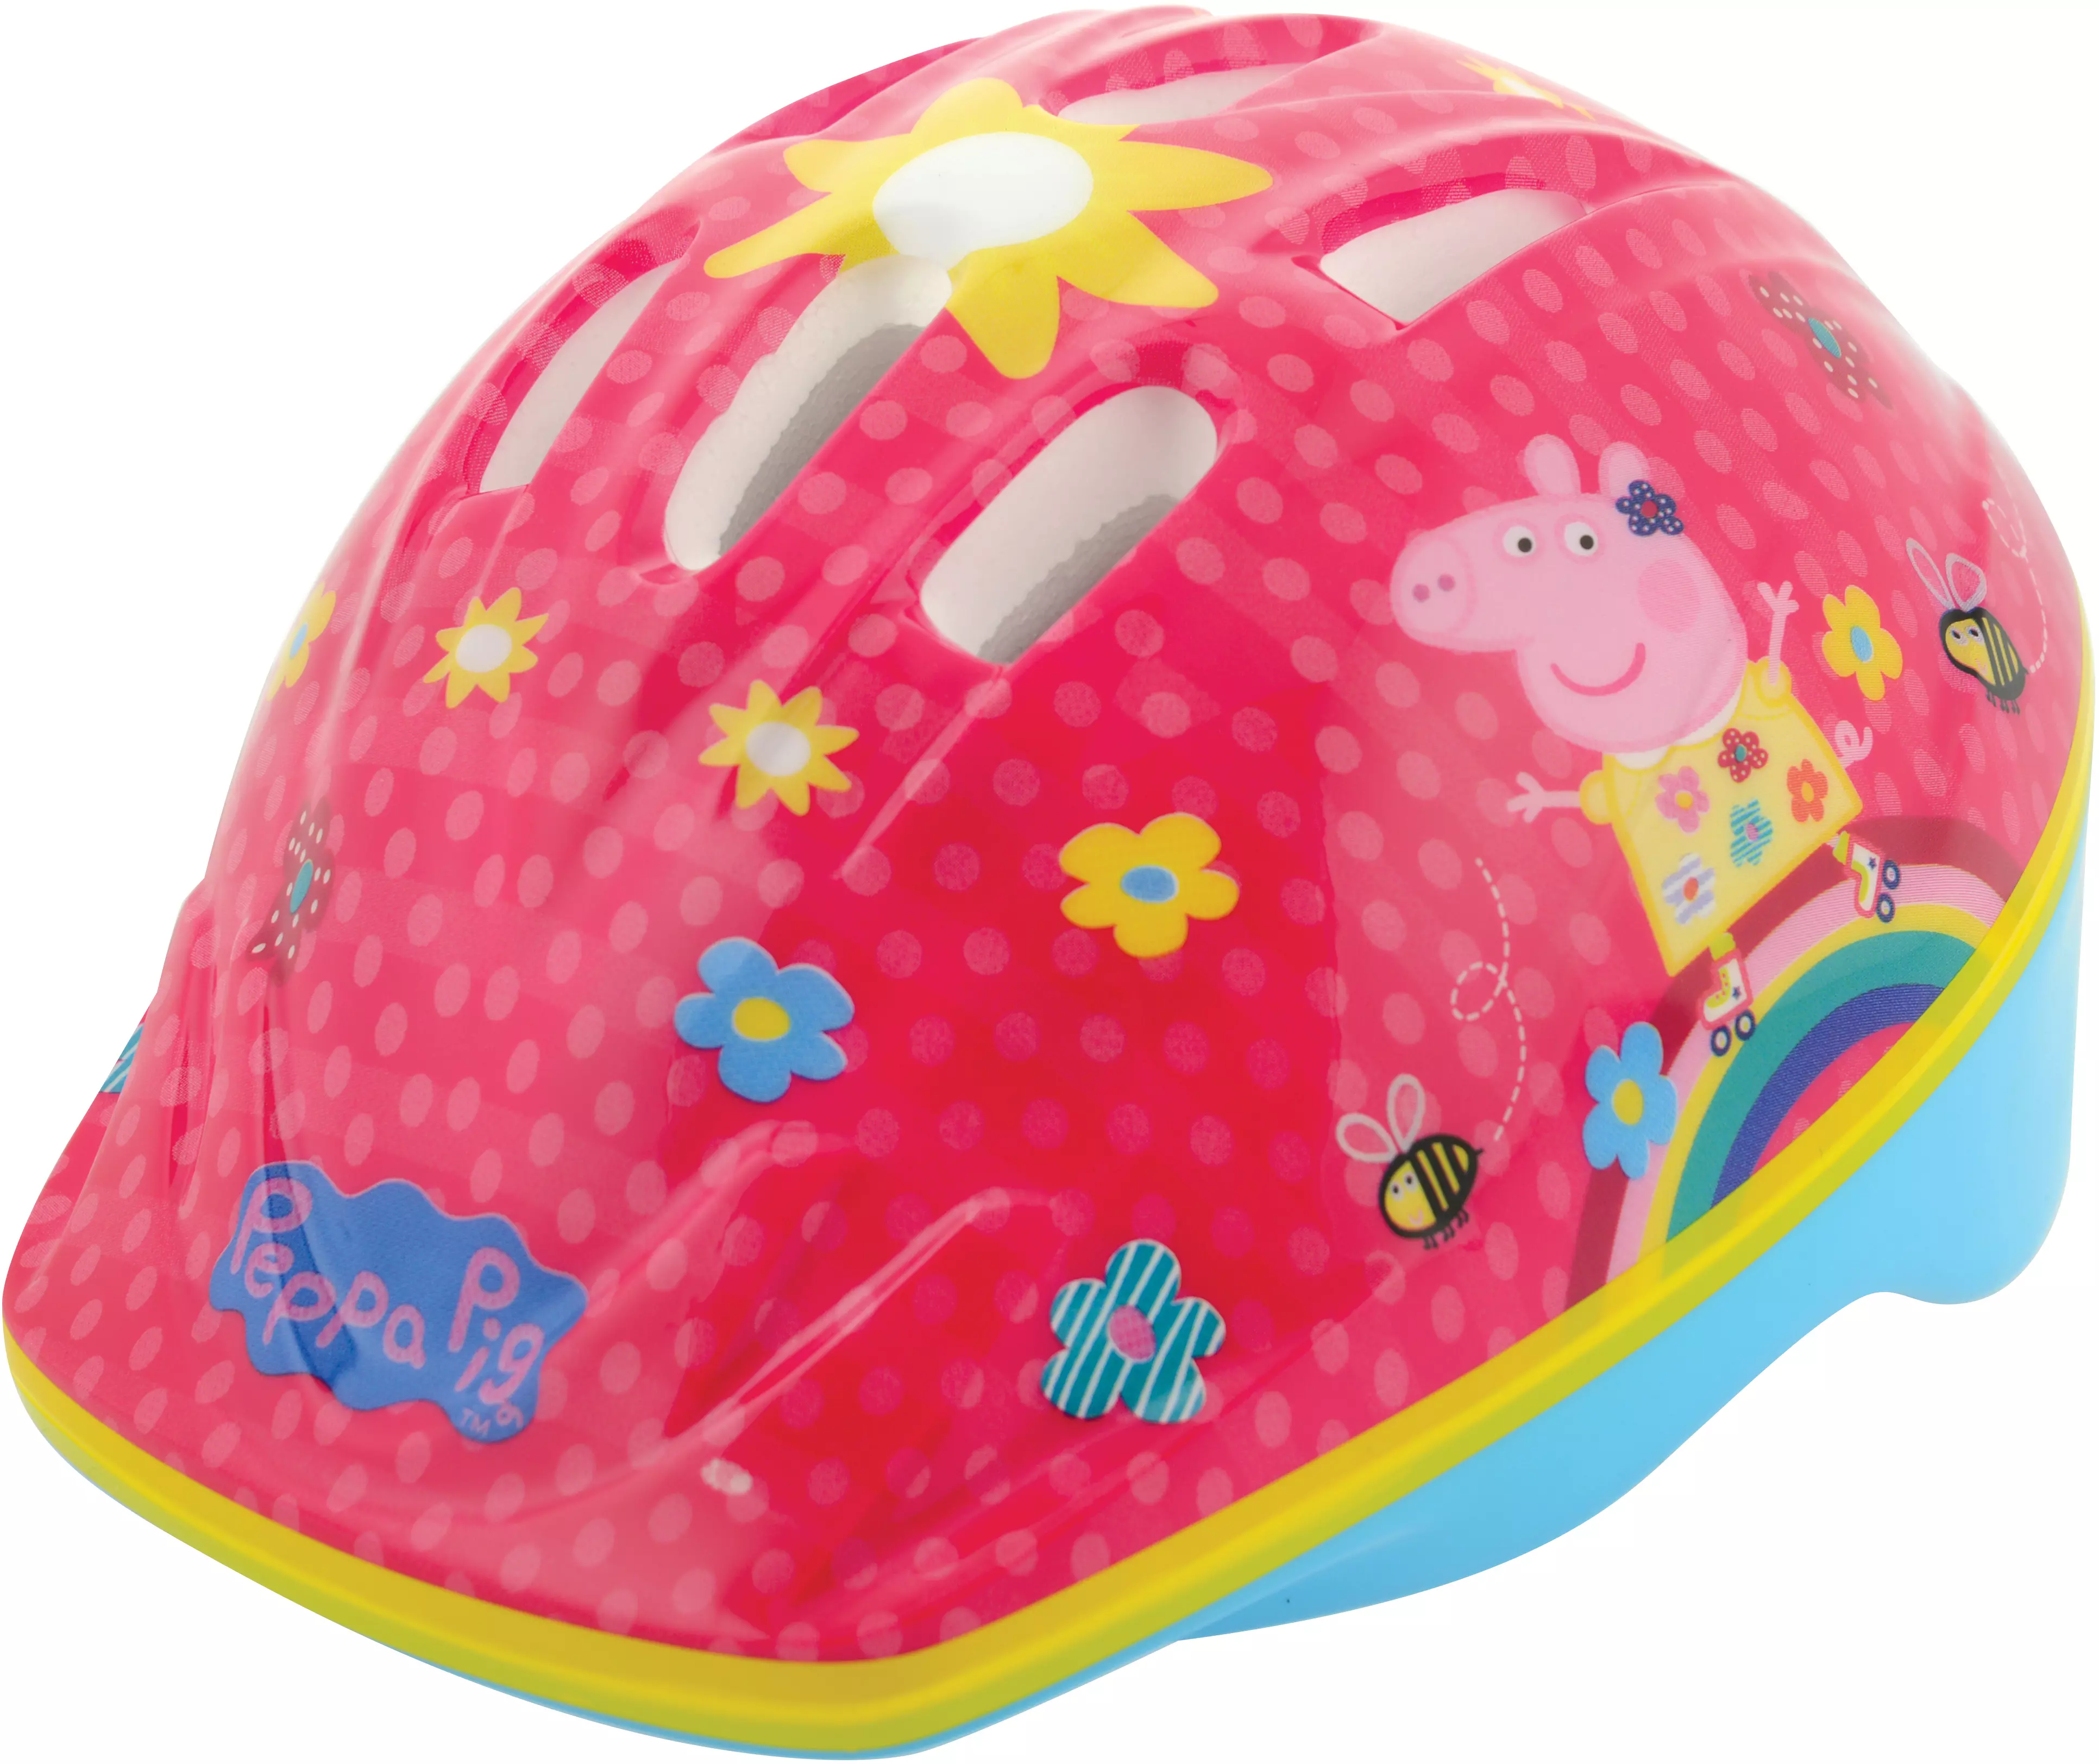 peppa pig kids helmet